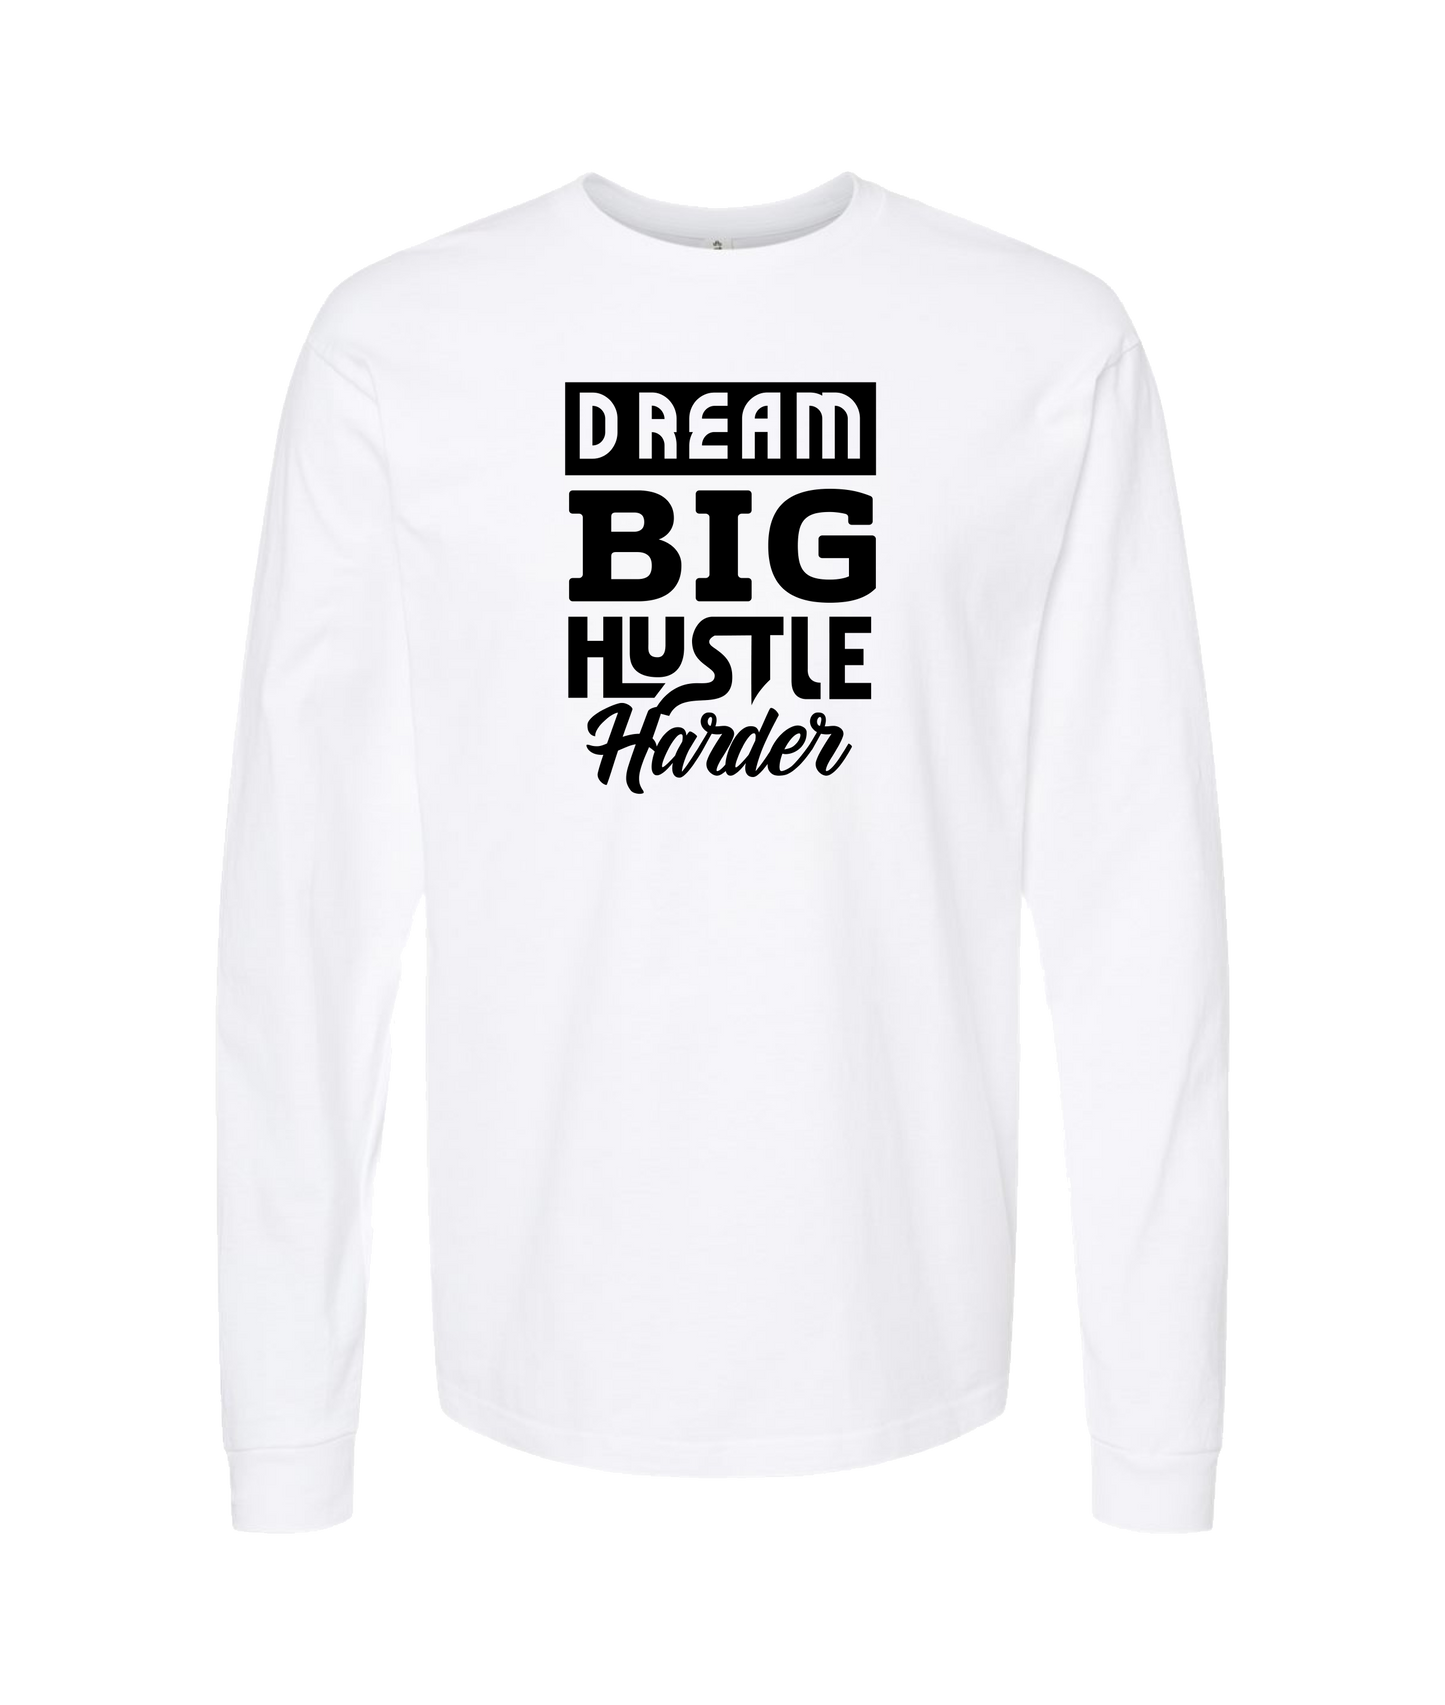 HustleMadeJhooks - Dream Big - White Long Sleeve T